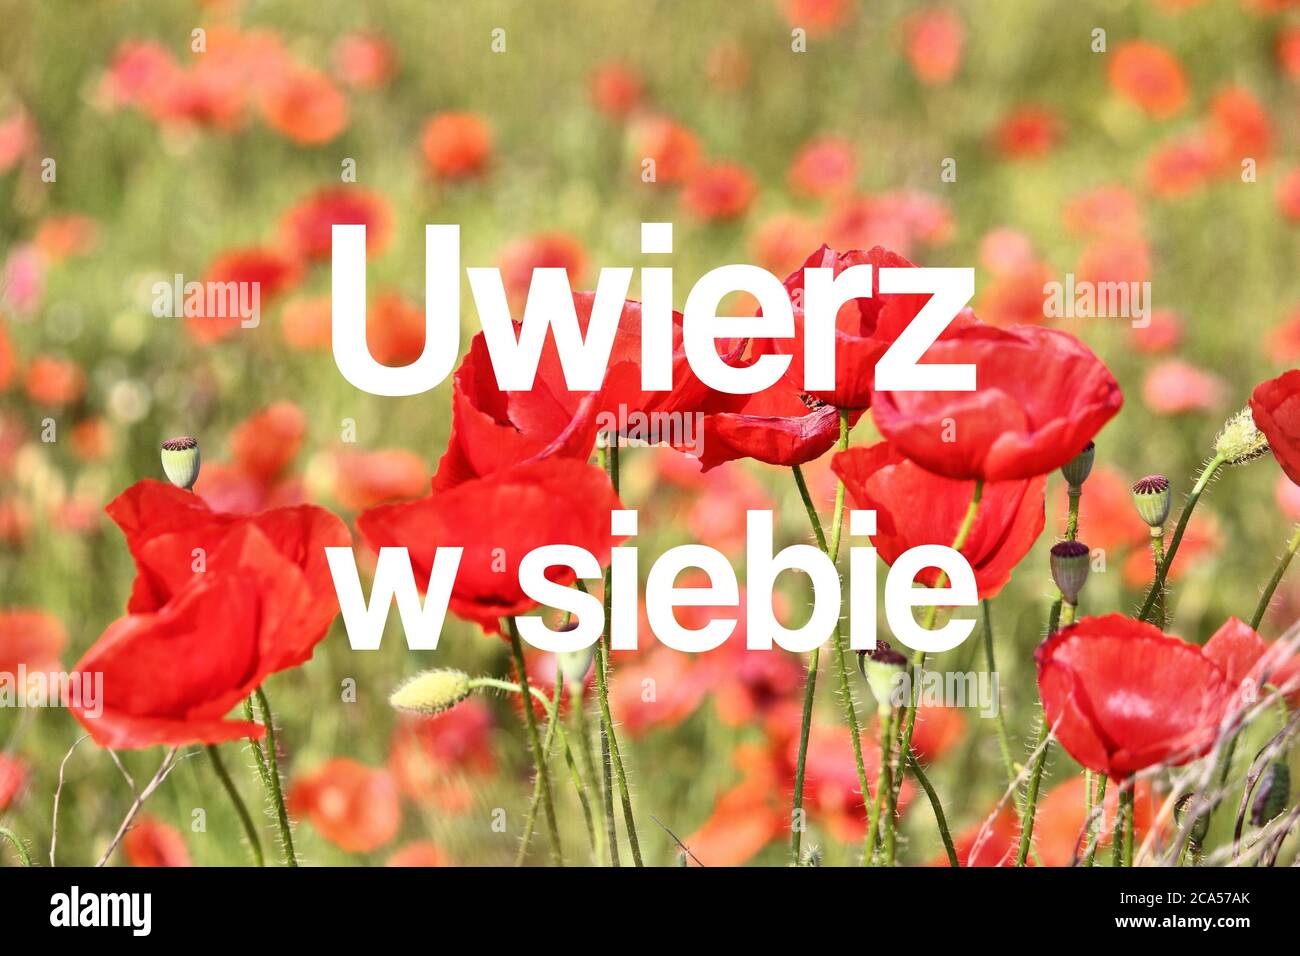 Uwierz w siebie (Glaube an dich selbst in polnischer Sprache). Motivationsposter in polnischer Sprache. Stockfoto